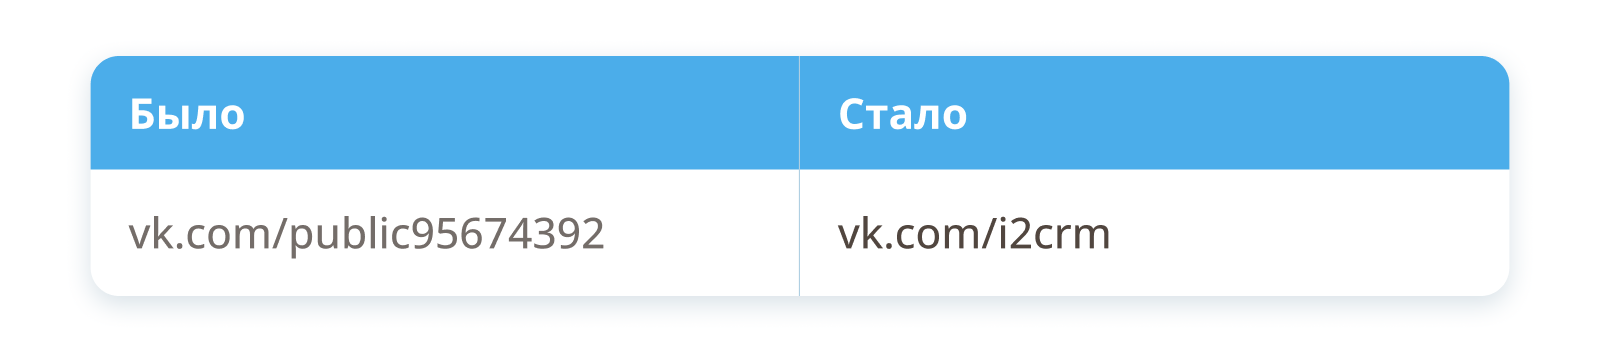 Адрес сообщества Вконтакте